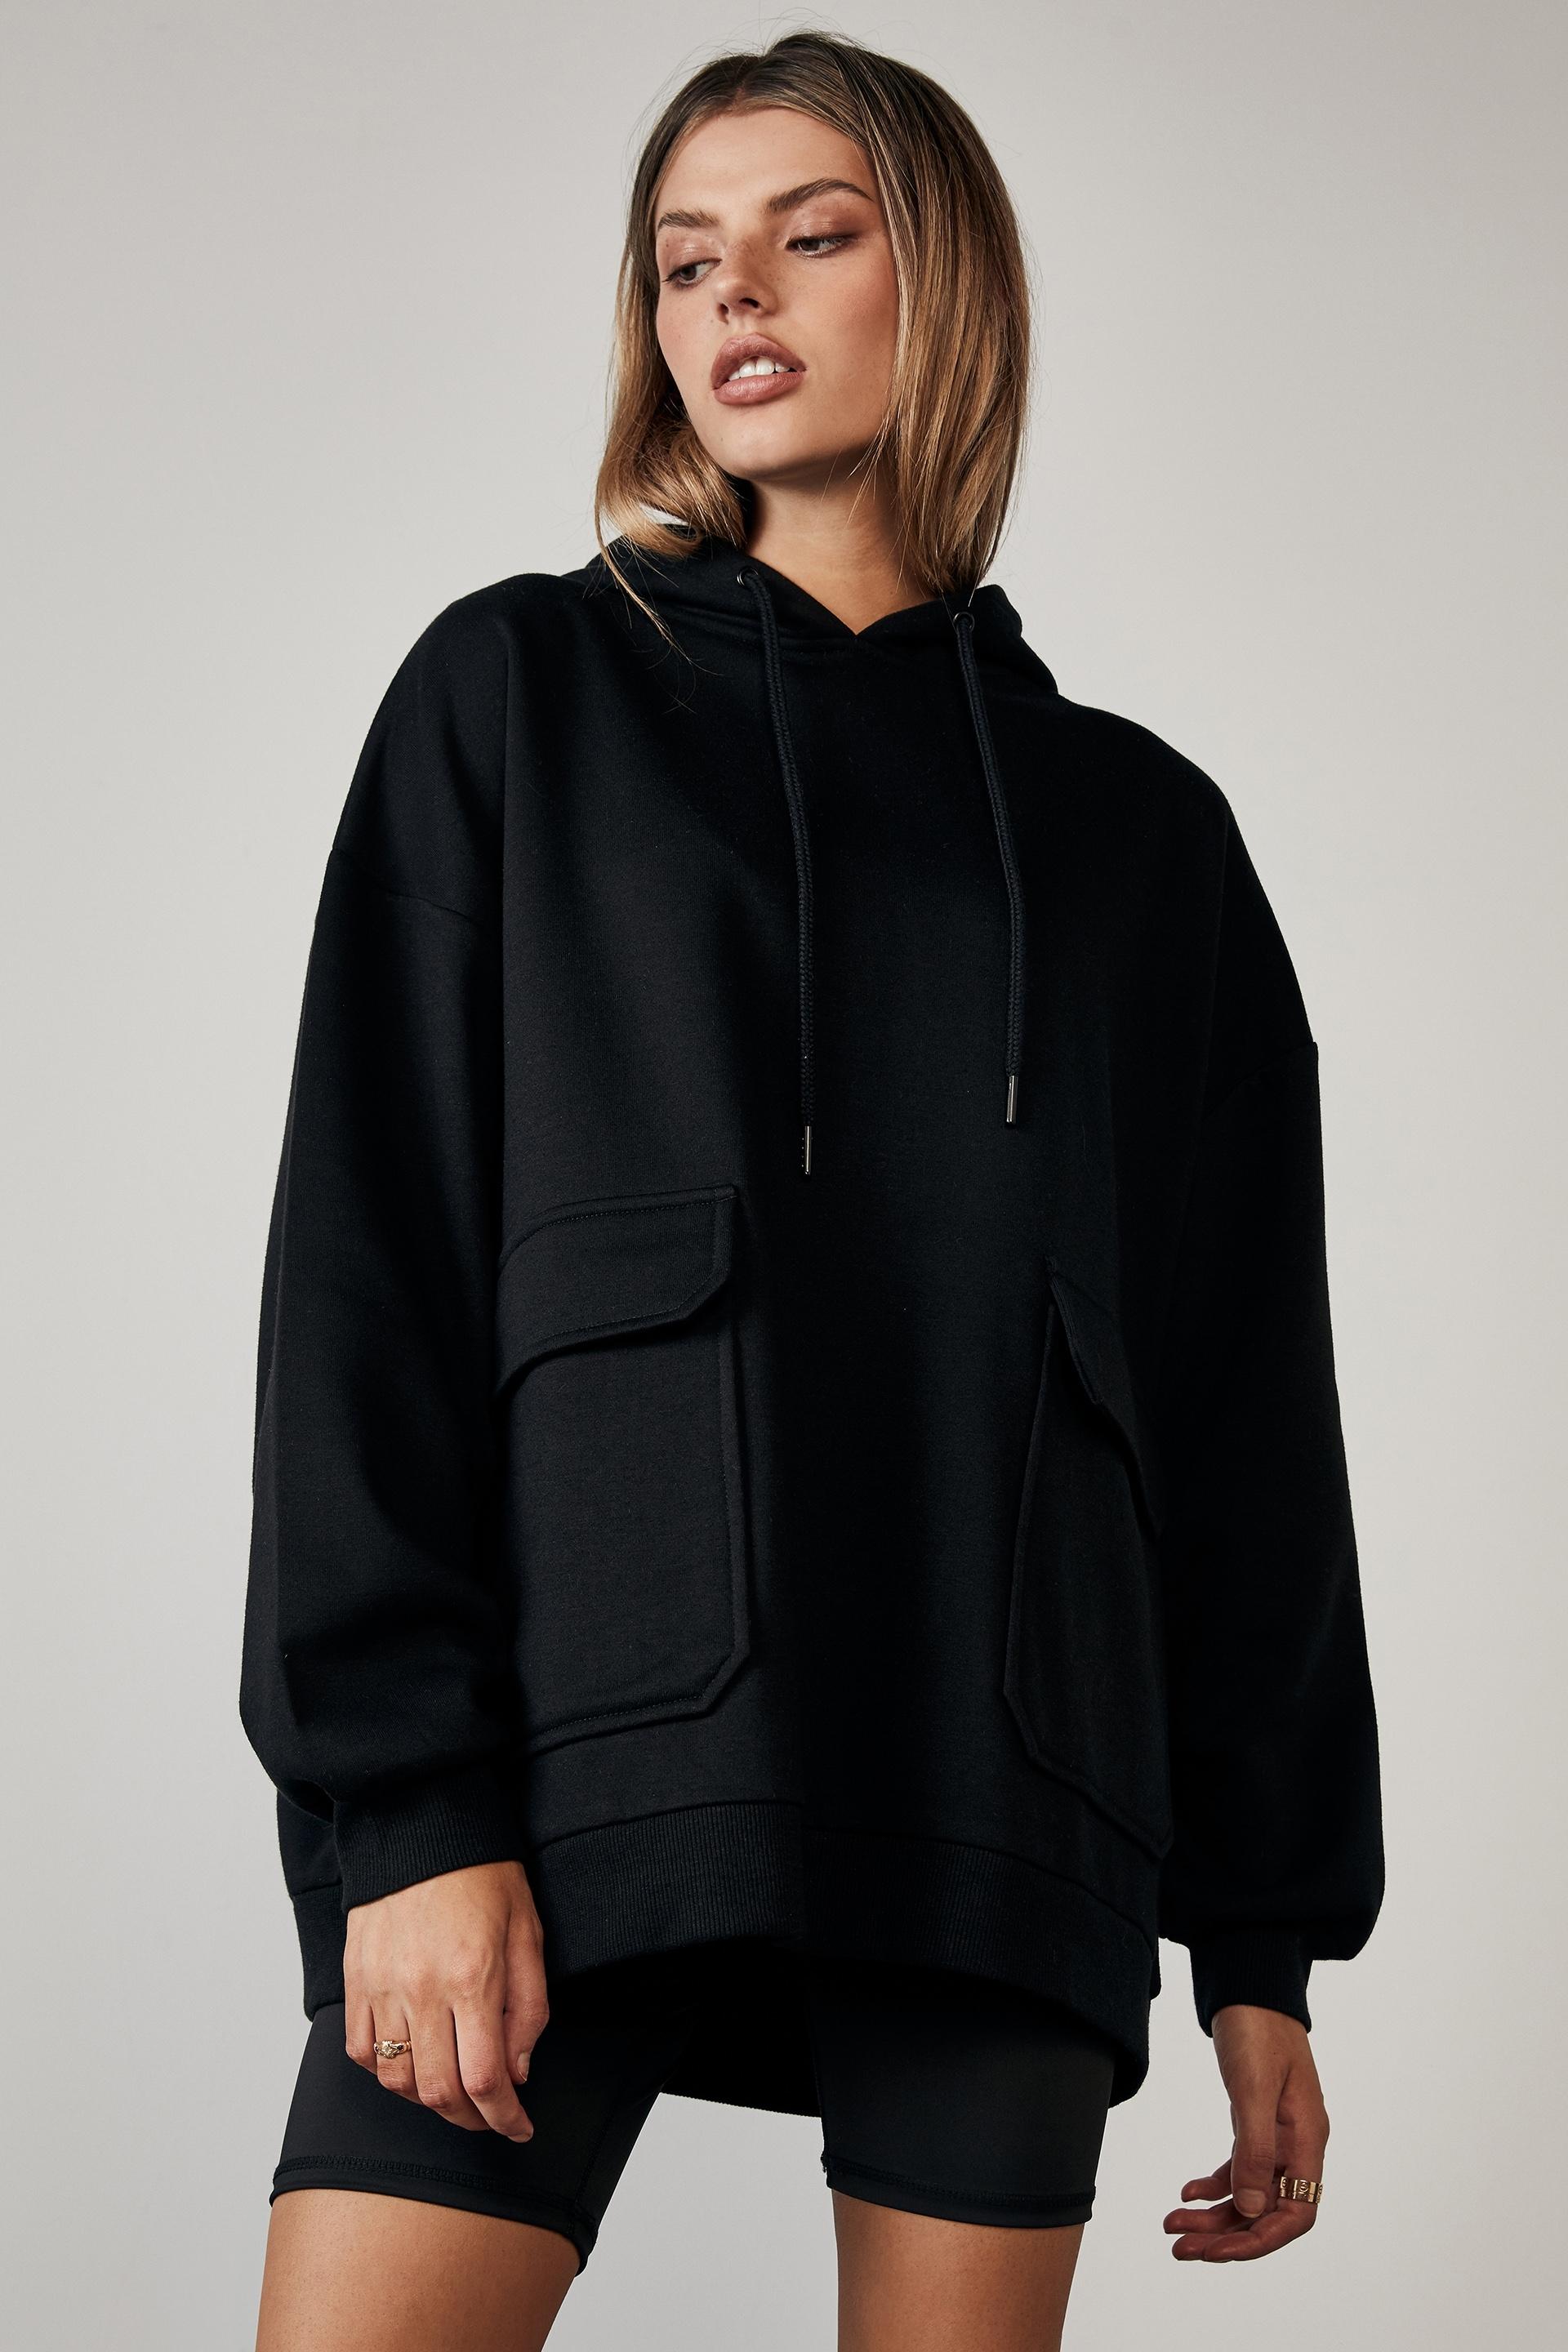 Utility hoodie - black Factorie Hoodies & Sweats | Superbalist.com